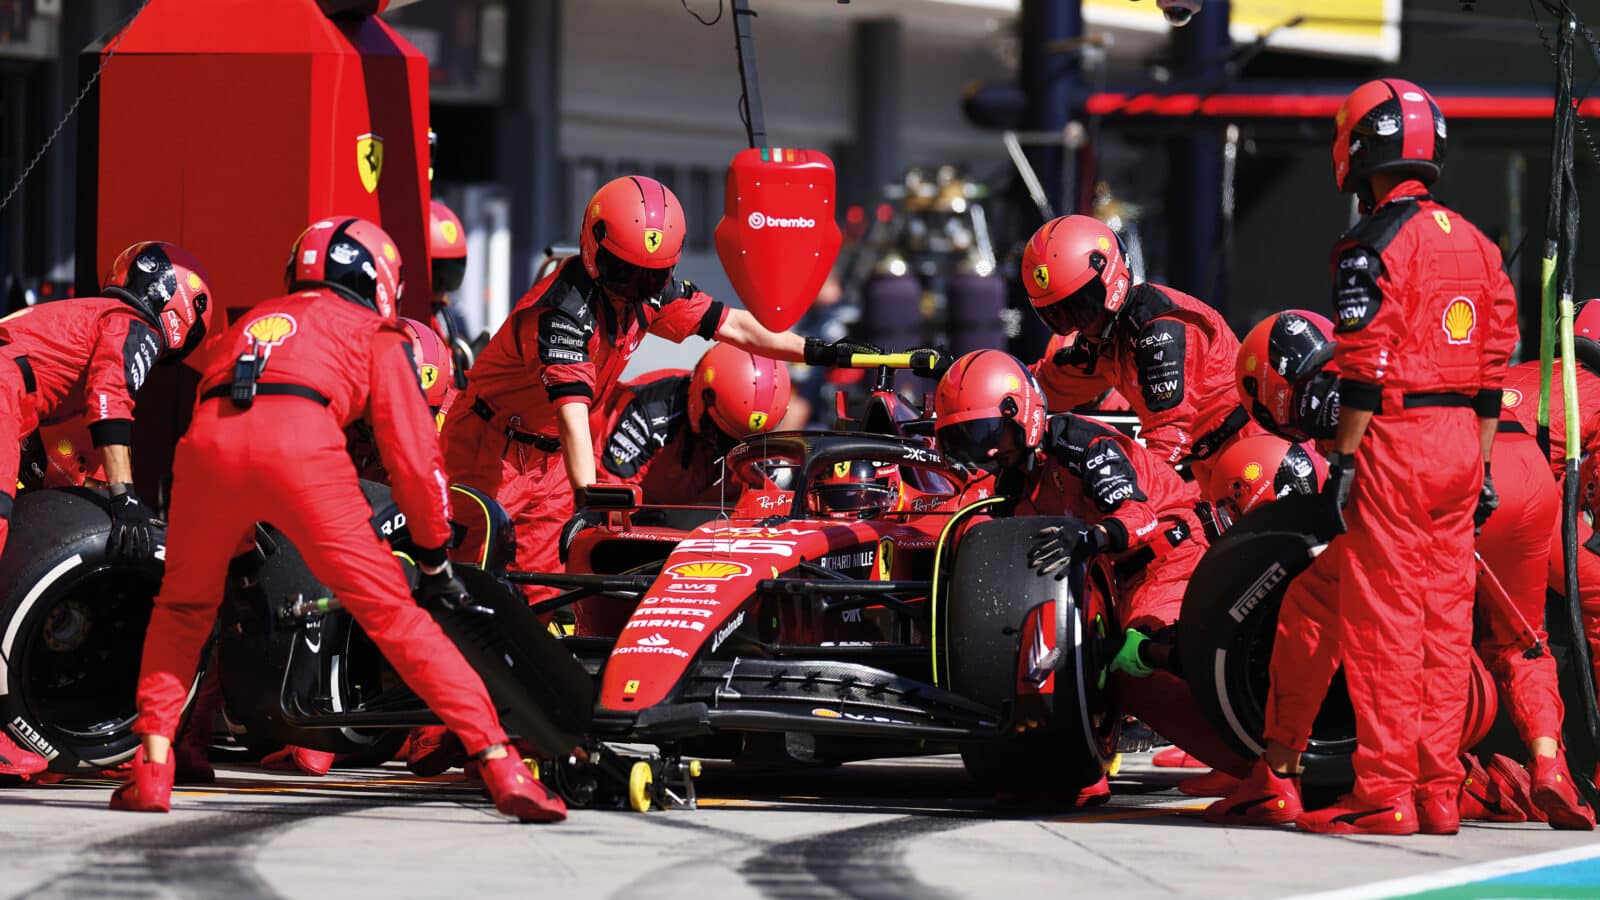 Ferrari pit lane wheel change